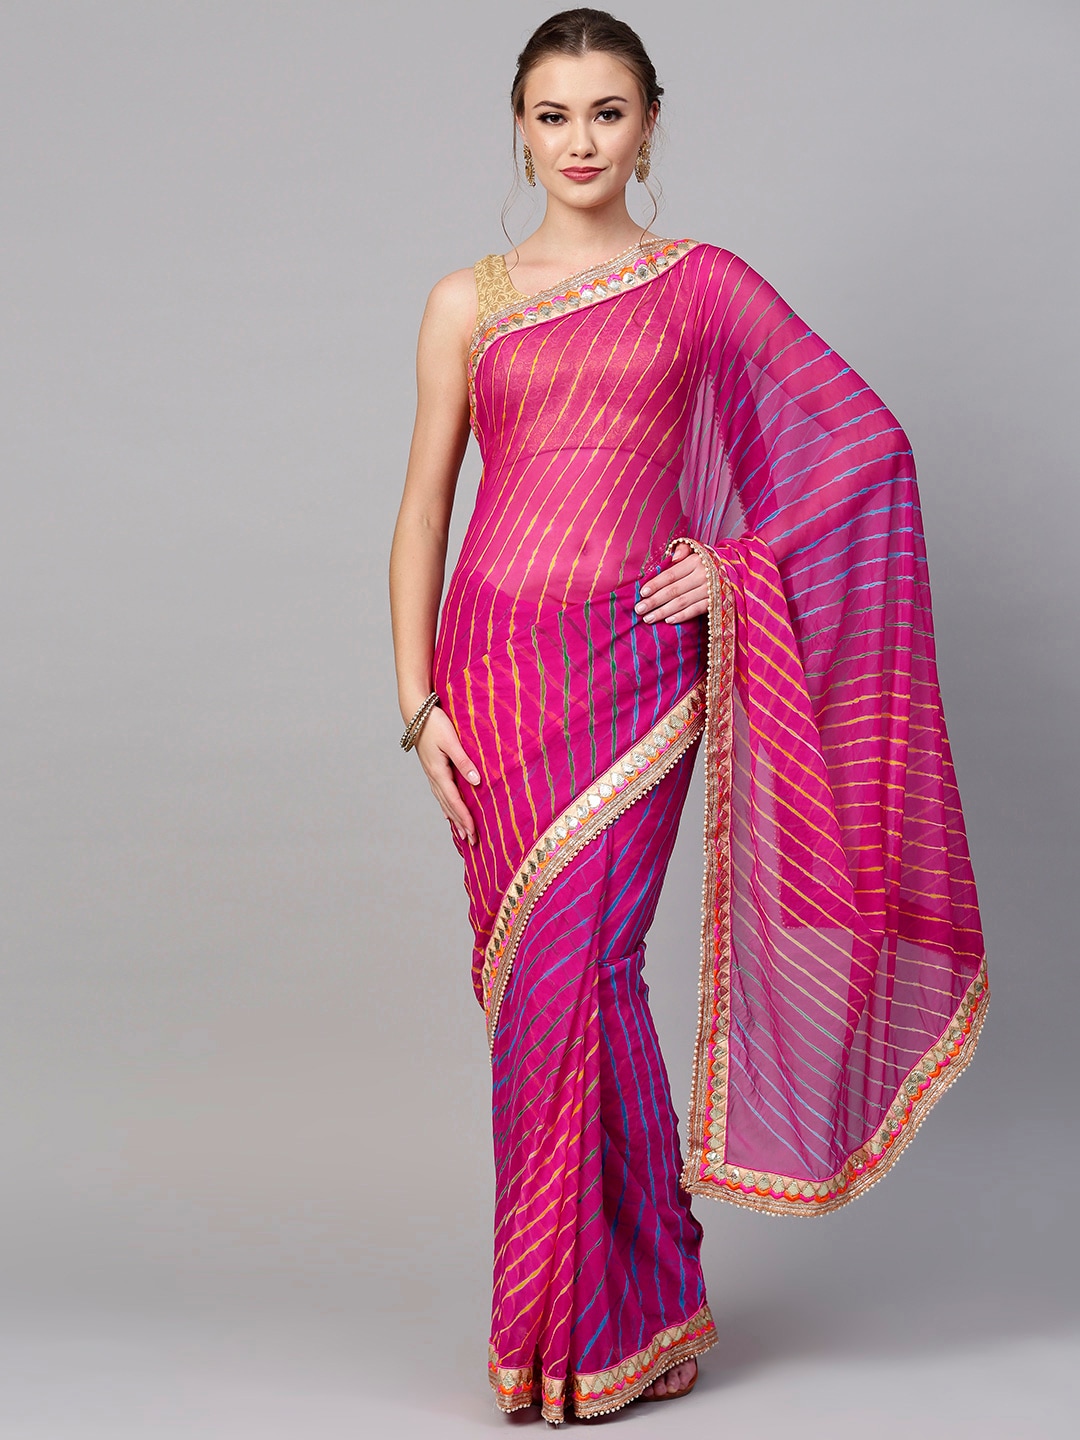 Indian Dress Up Games Sari Maker